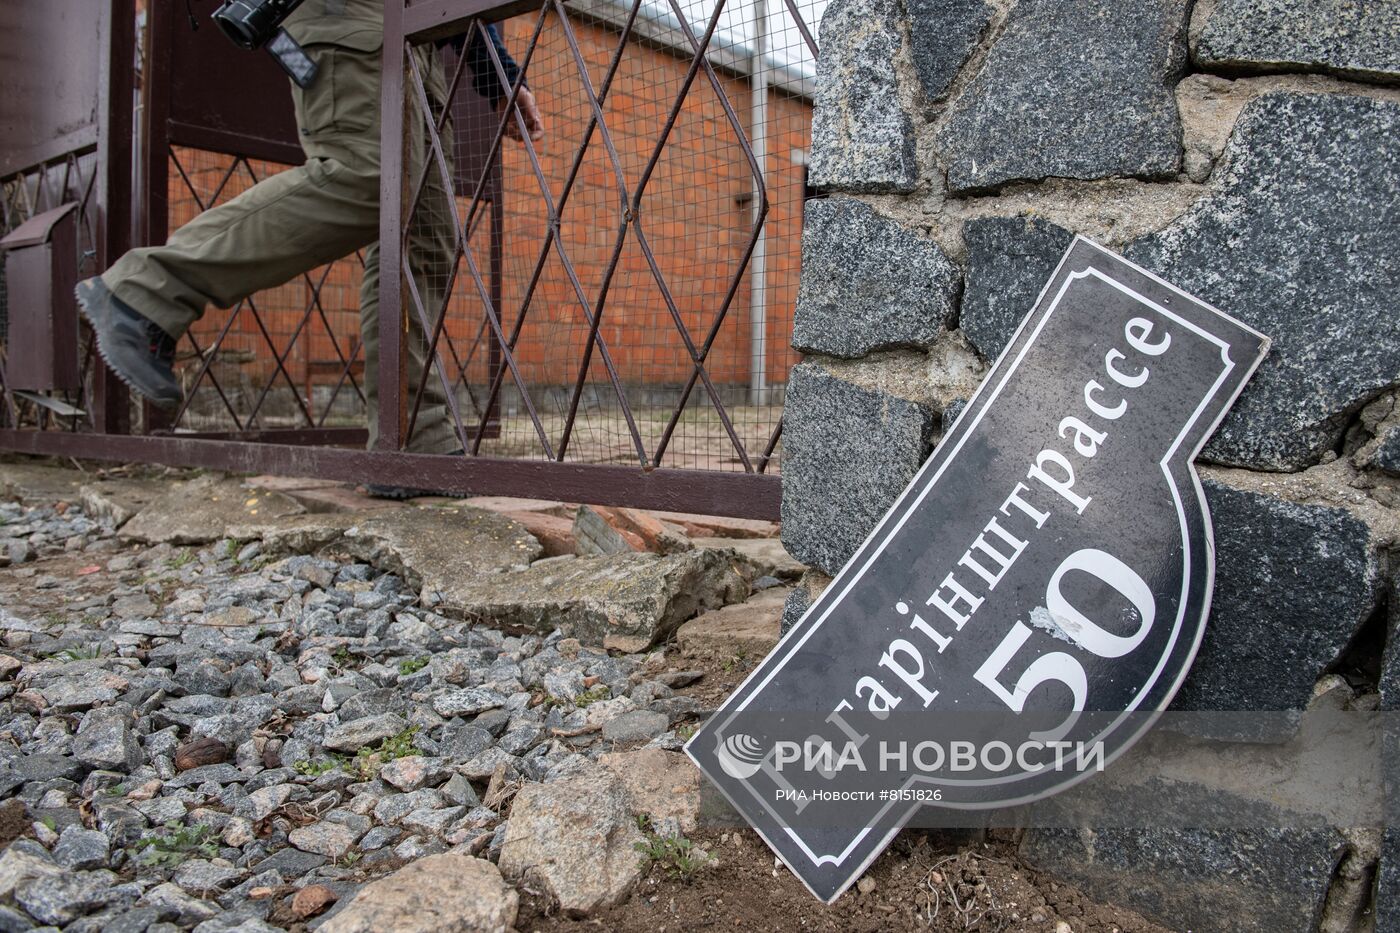 В Бердянске найдена нацистская символика одного из командиров Айдара